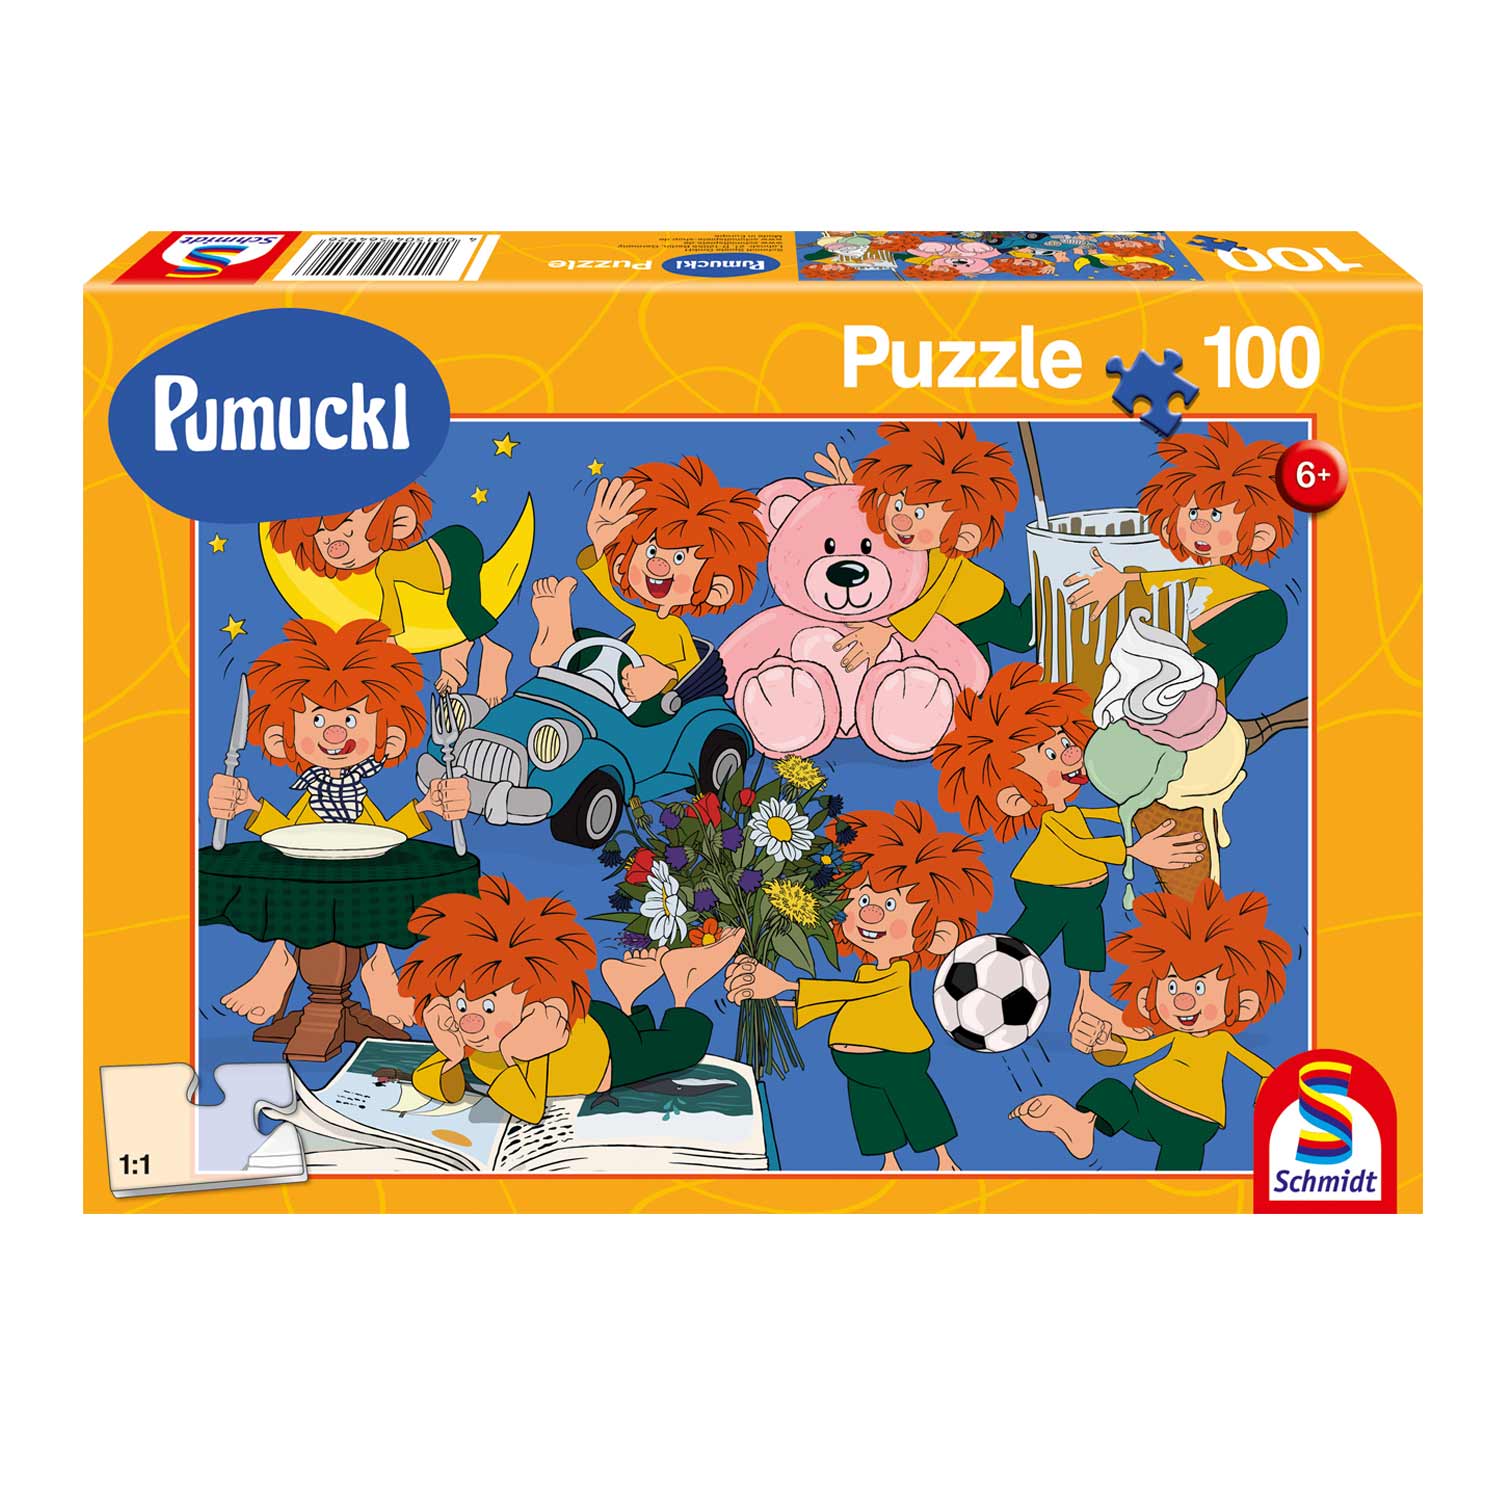 ®Pumuckl Puzzle "Spaß mit Pumuckl"